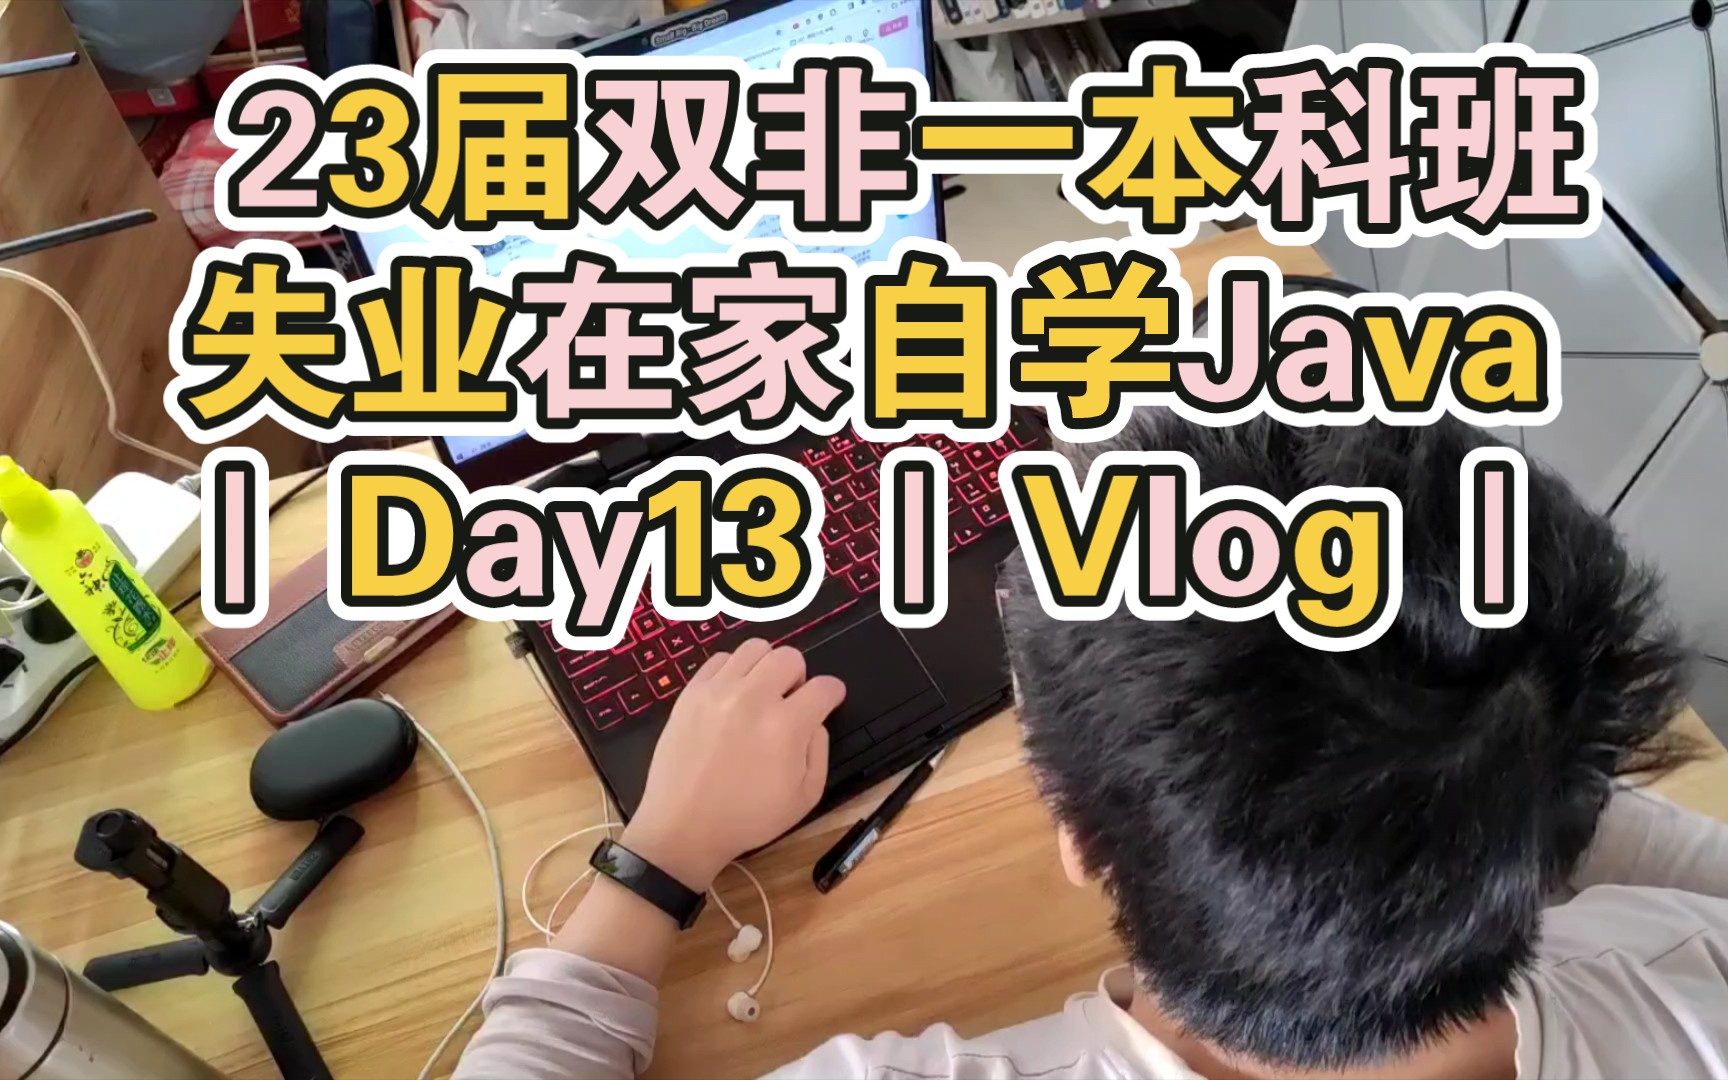 不考公不考编，冲刺大厂JAVA岗30W年薪 23届双非一本科班失业在家自学Java Day13 Vlog